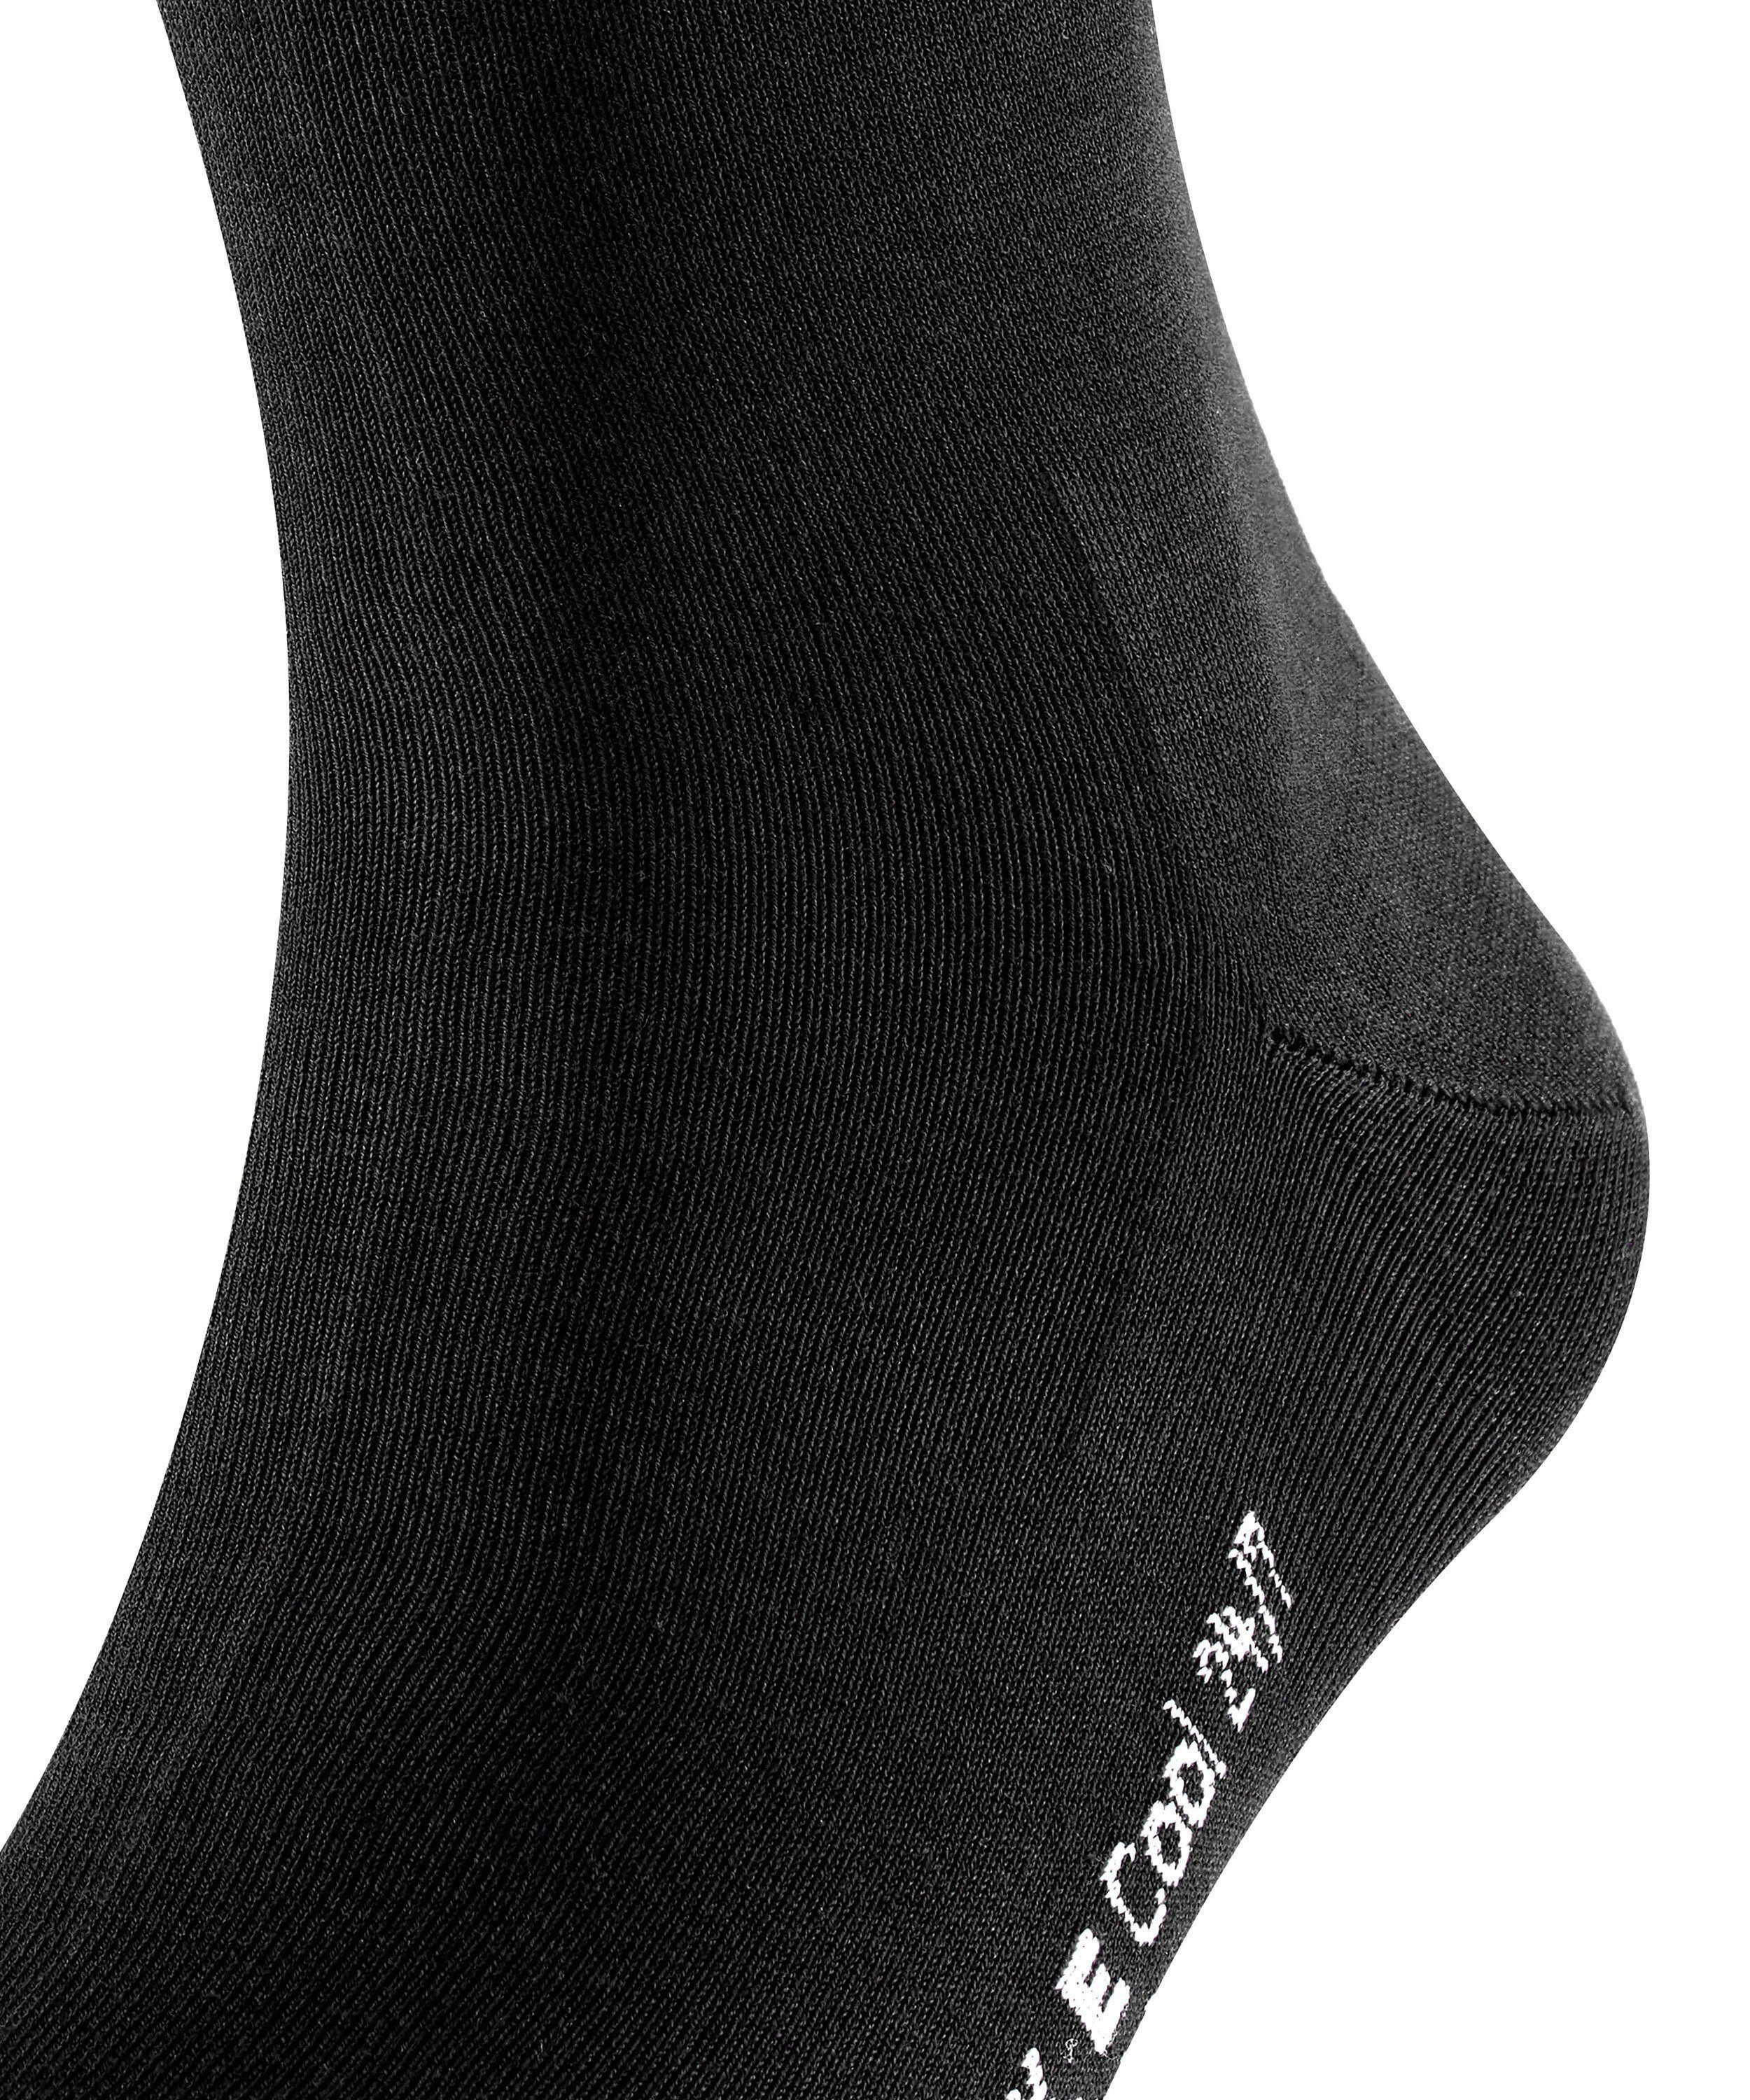 (3000) Cool 24/7 Socken (1-Paar) black FALKE